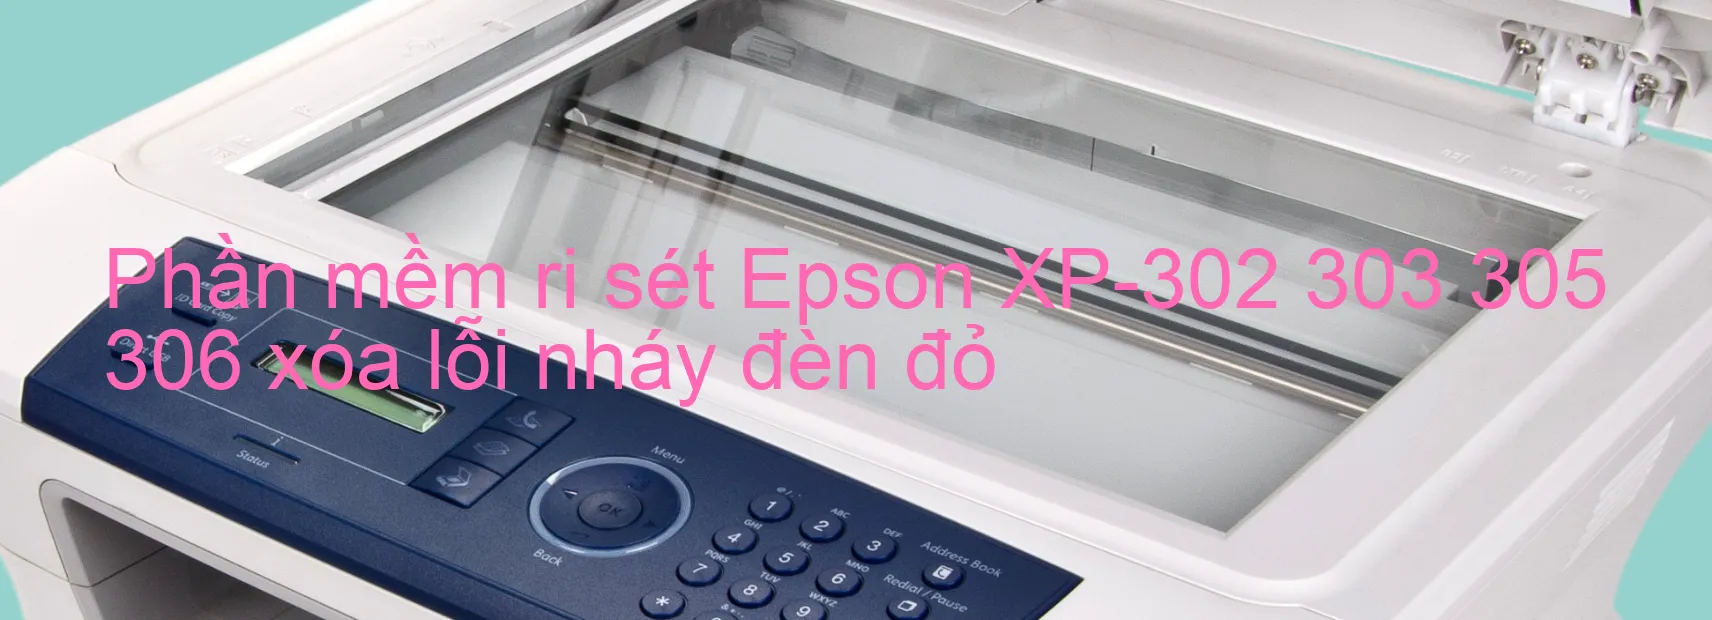 Phần mềm reset Epson XP-302 303 305 306 xóa lỗi nháy đèn đỏ